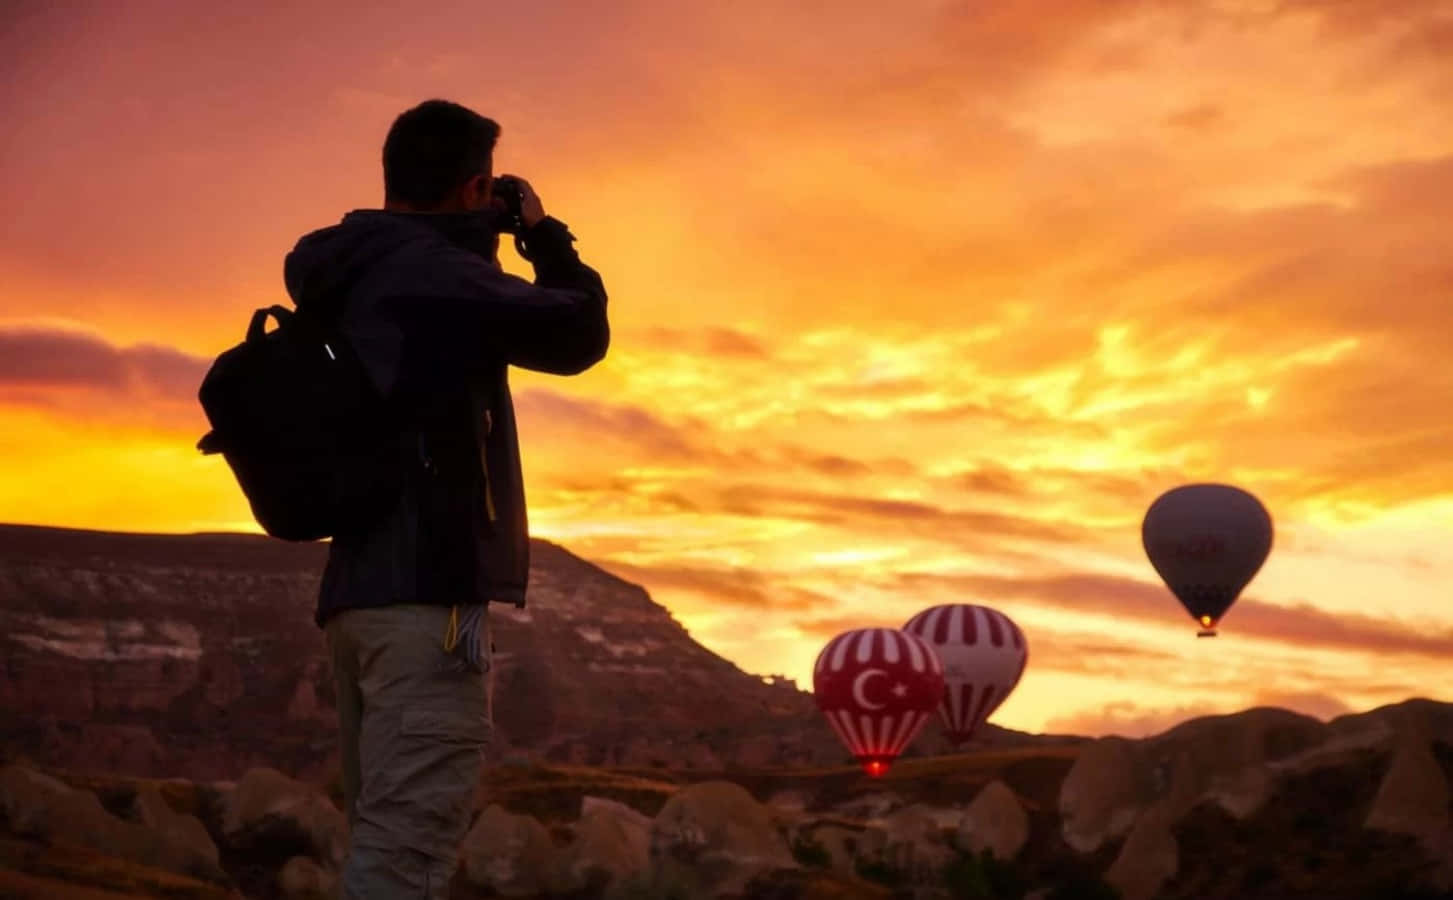 cappadocia hot air balloons tour